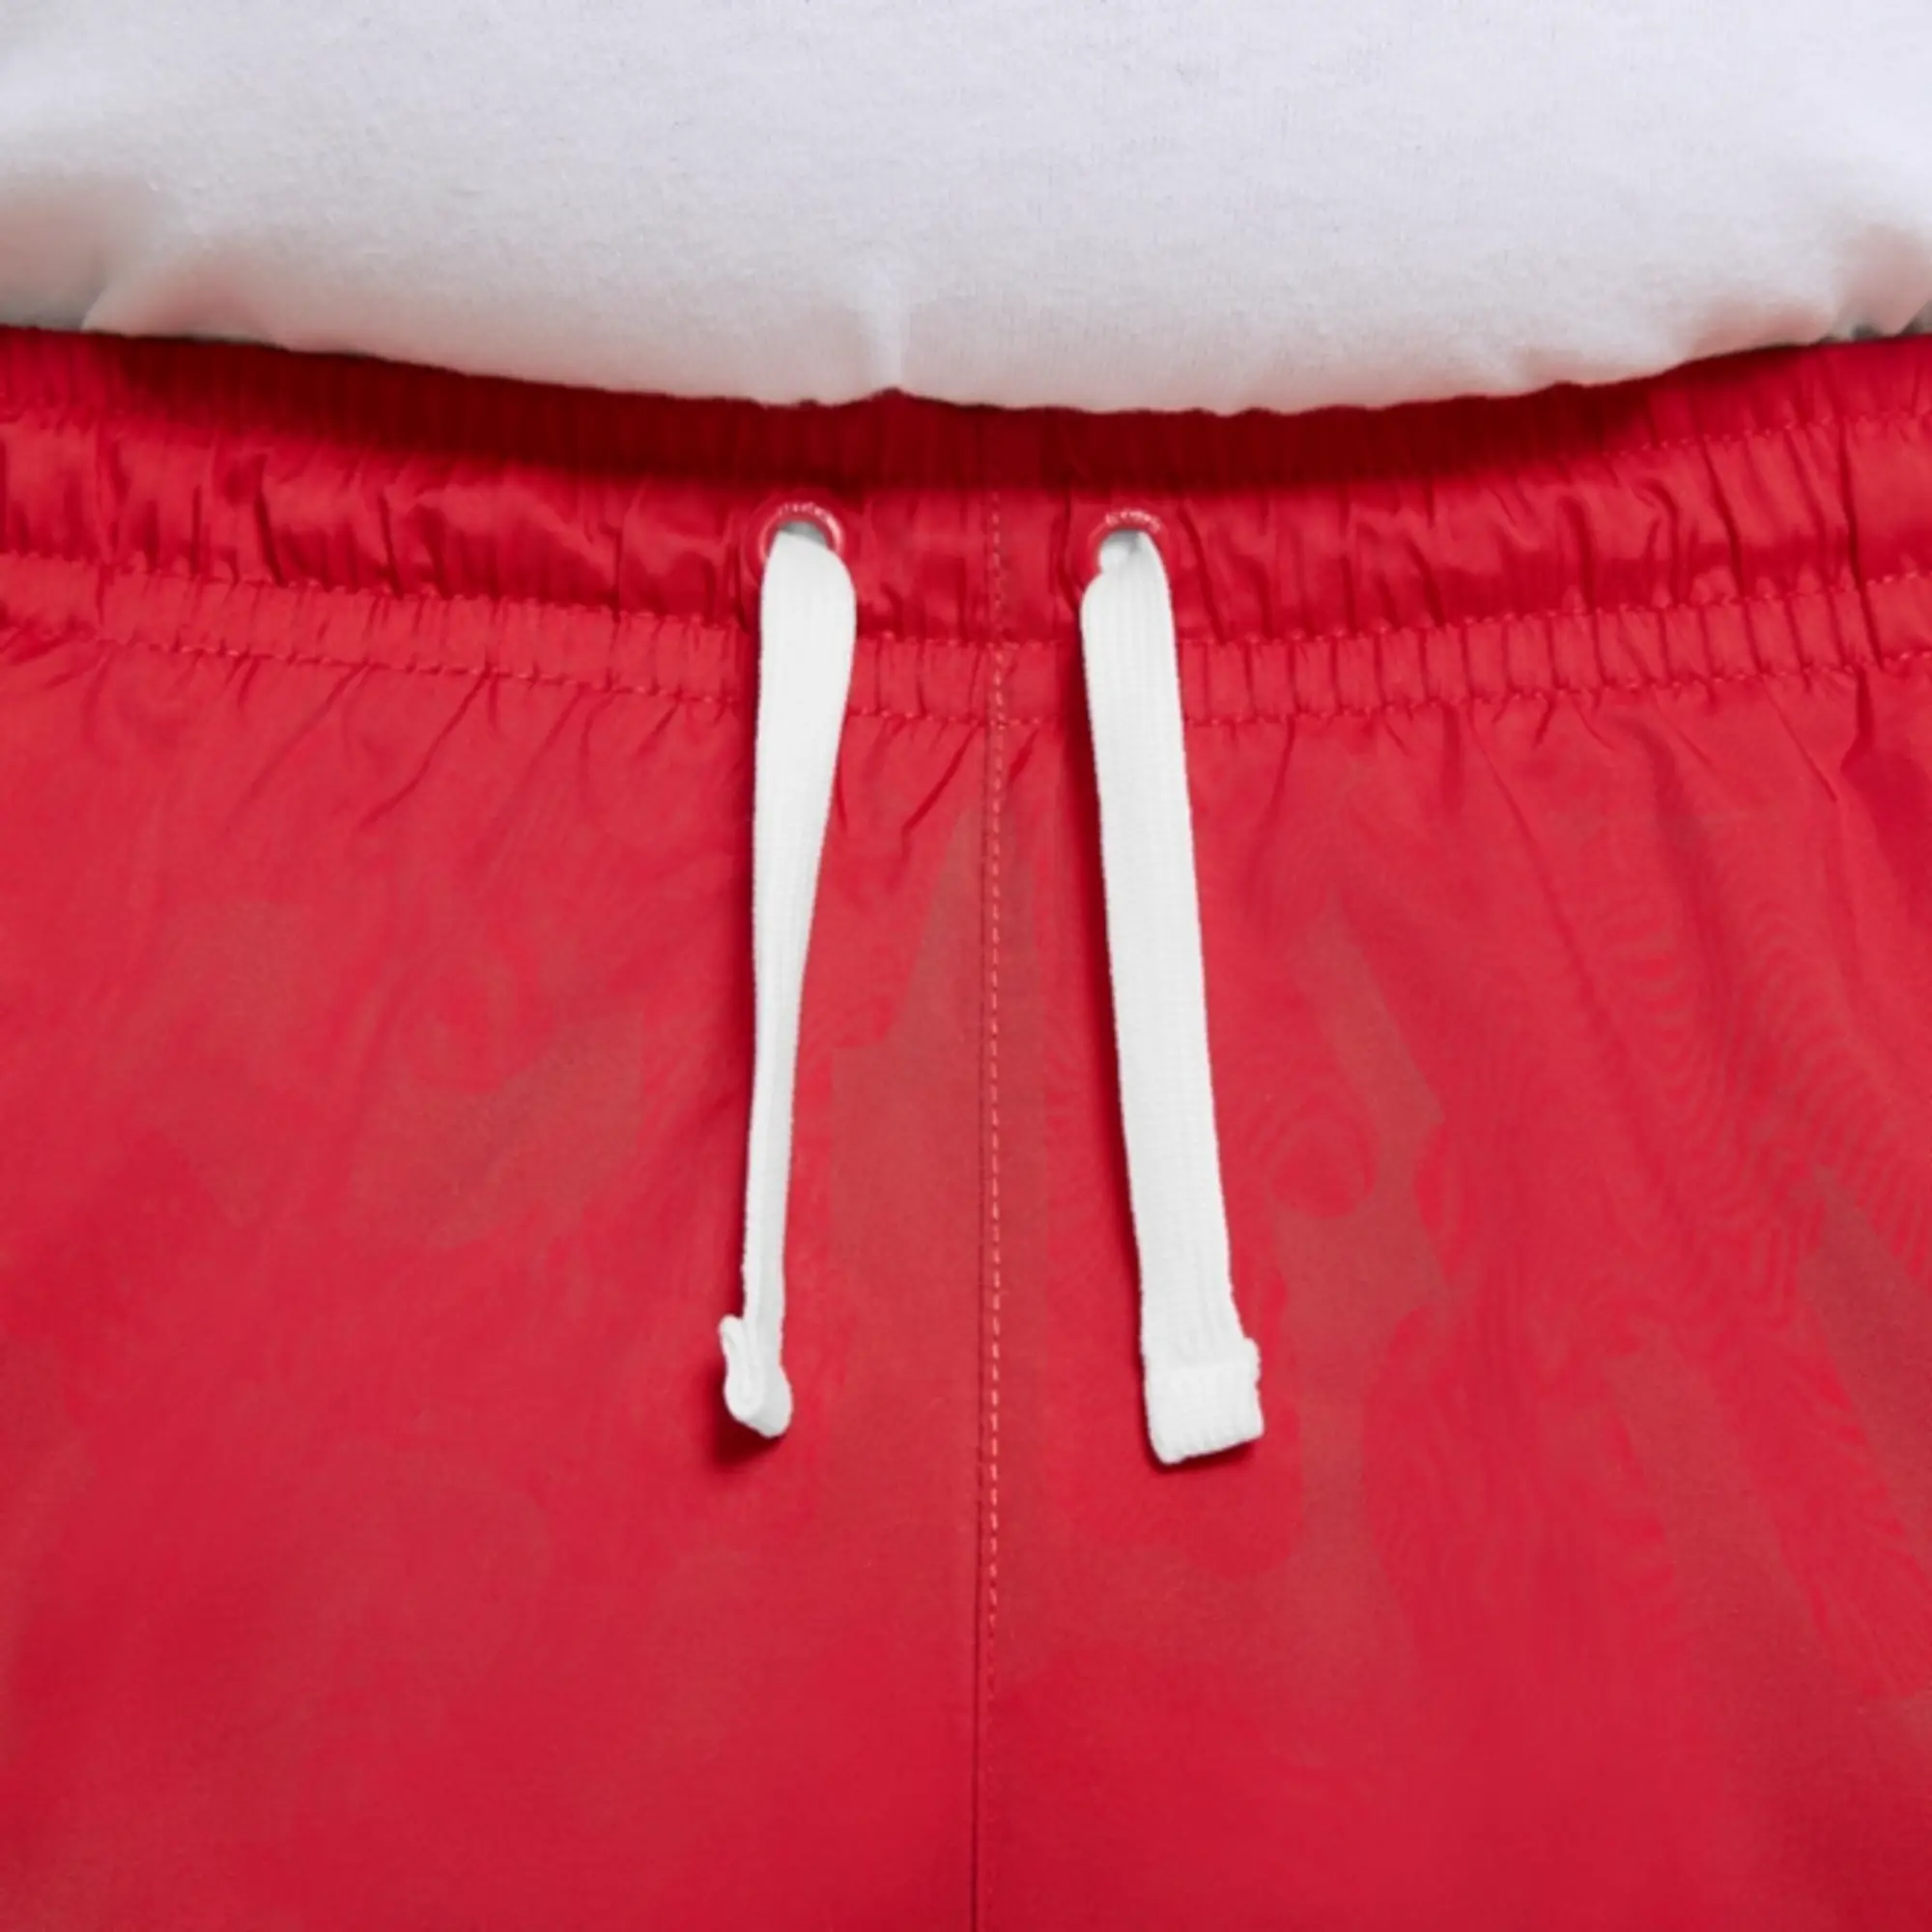 Nike Sportswear Men's Woven Flow Shorts - Red